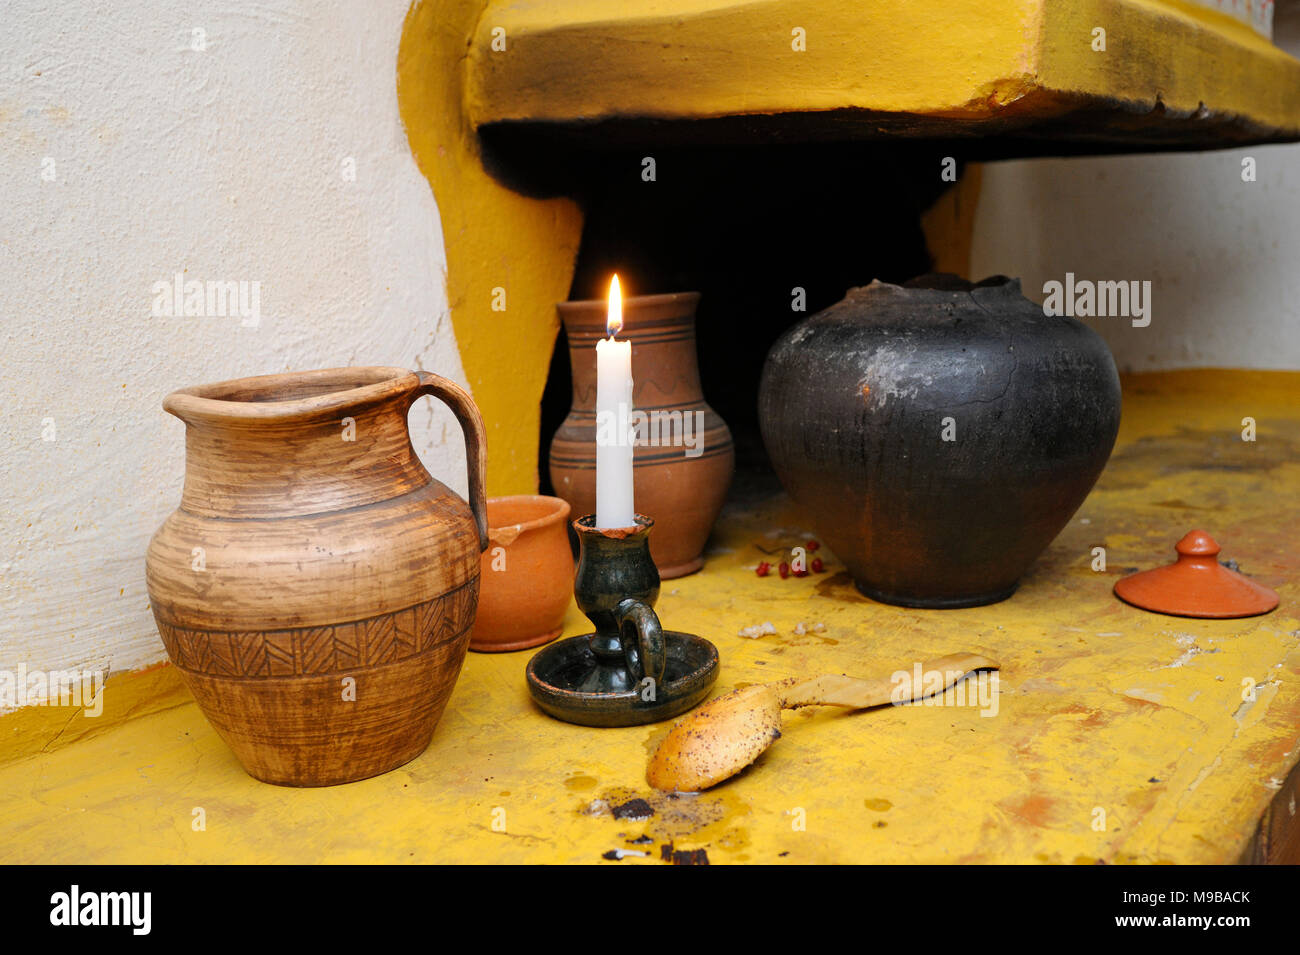 Tradizionale ucraino creta, vaso, cucchiaio di legno e candela bruciante posto vicino vecchio forno rustico. Kiev, Ucraina Foto Stock